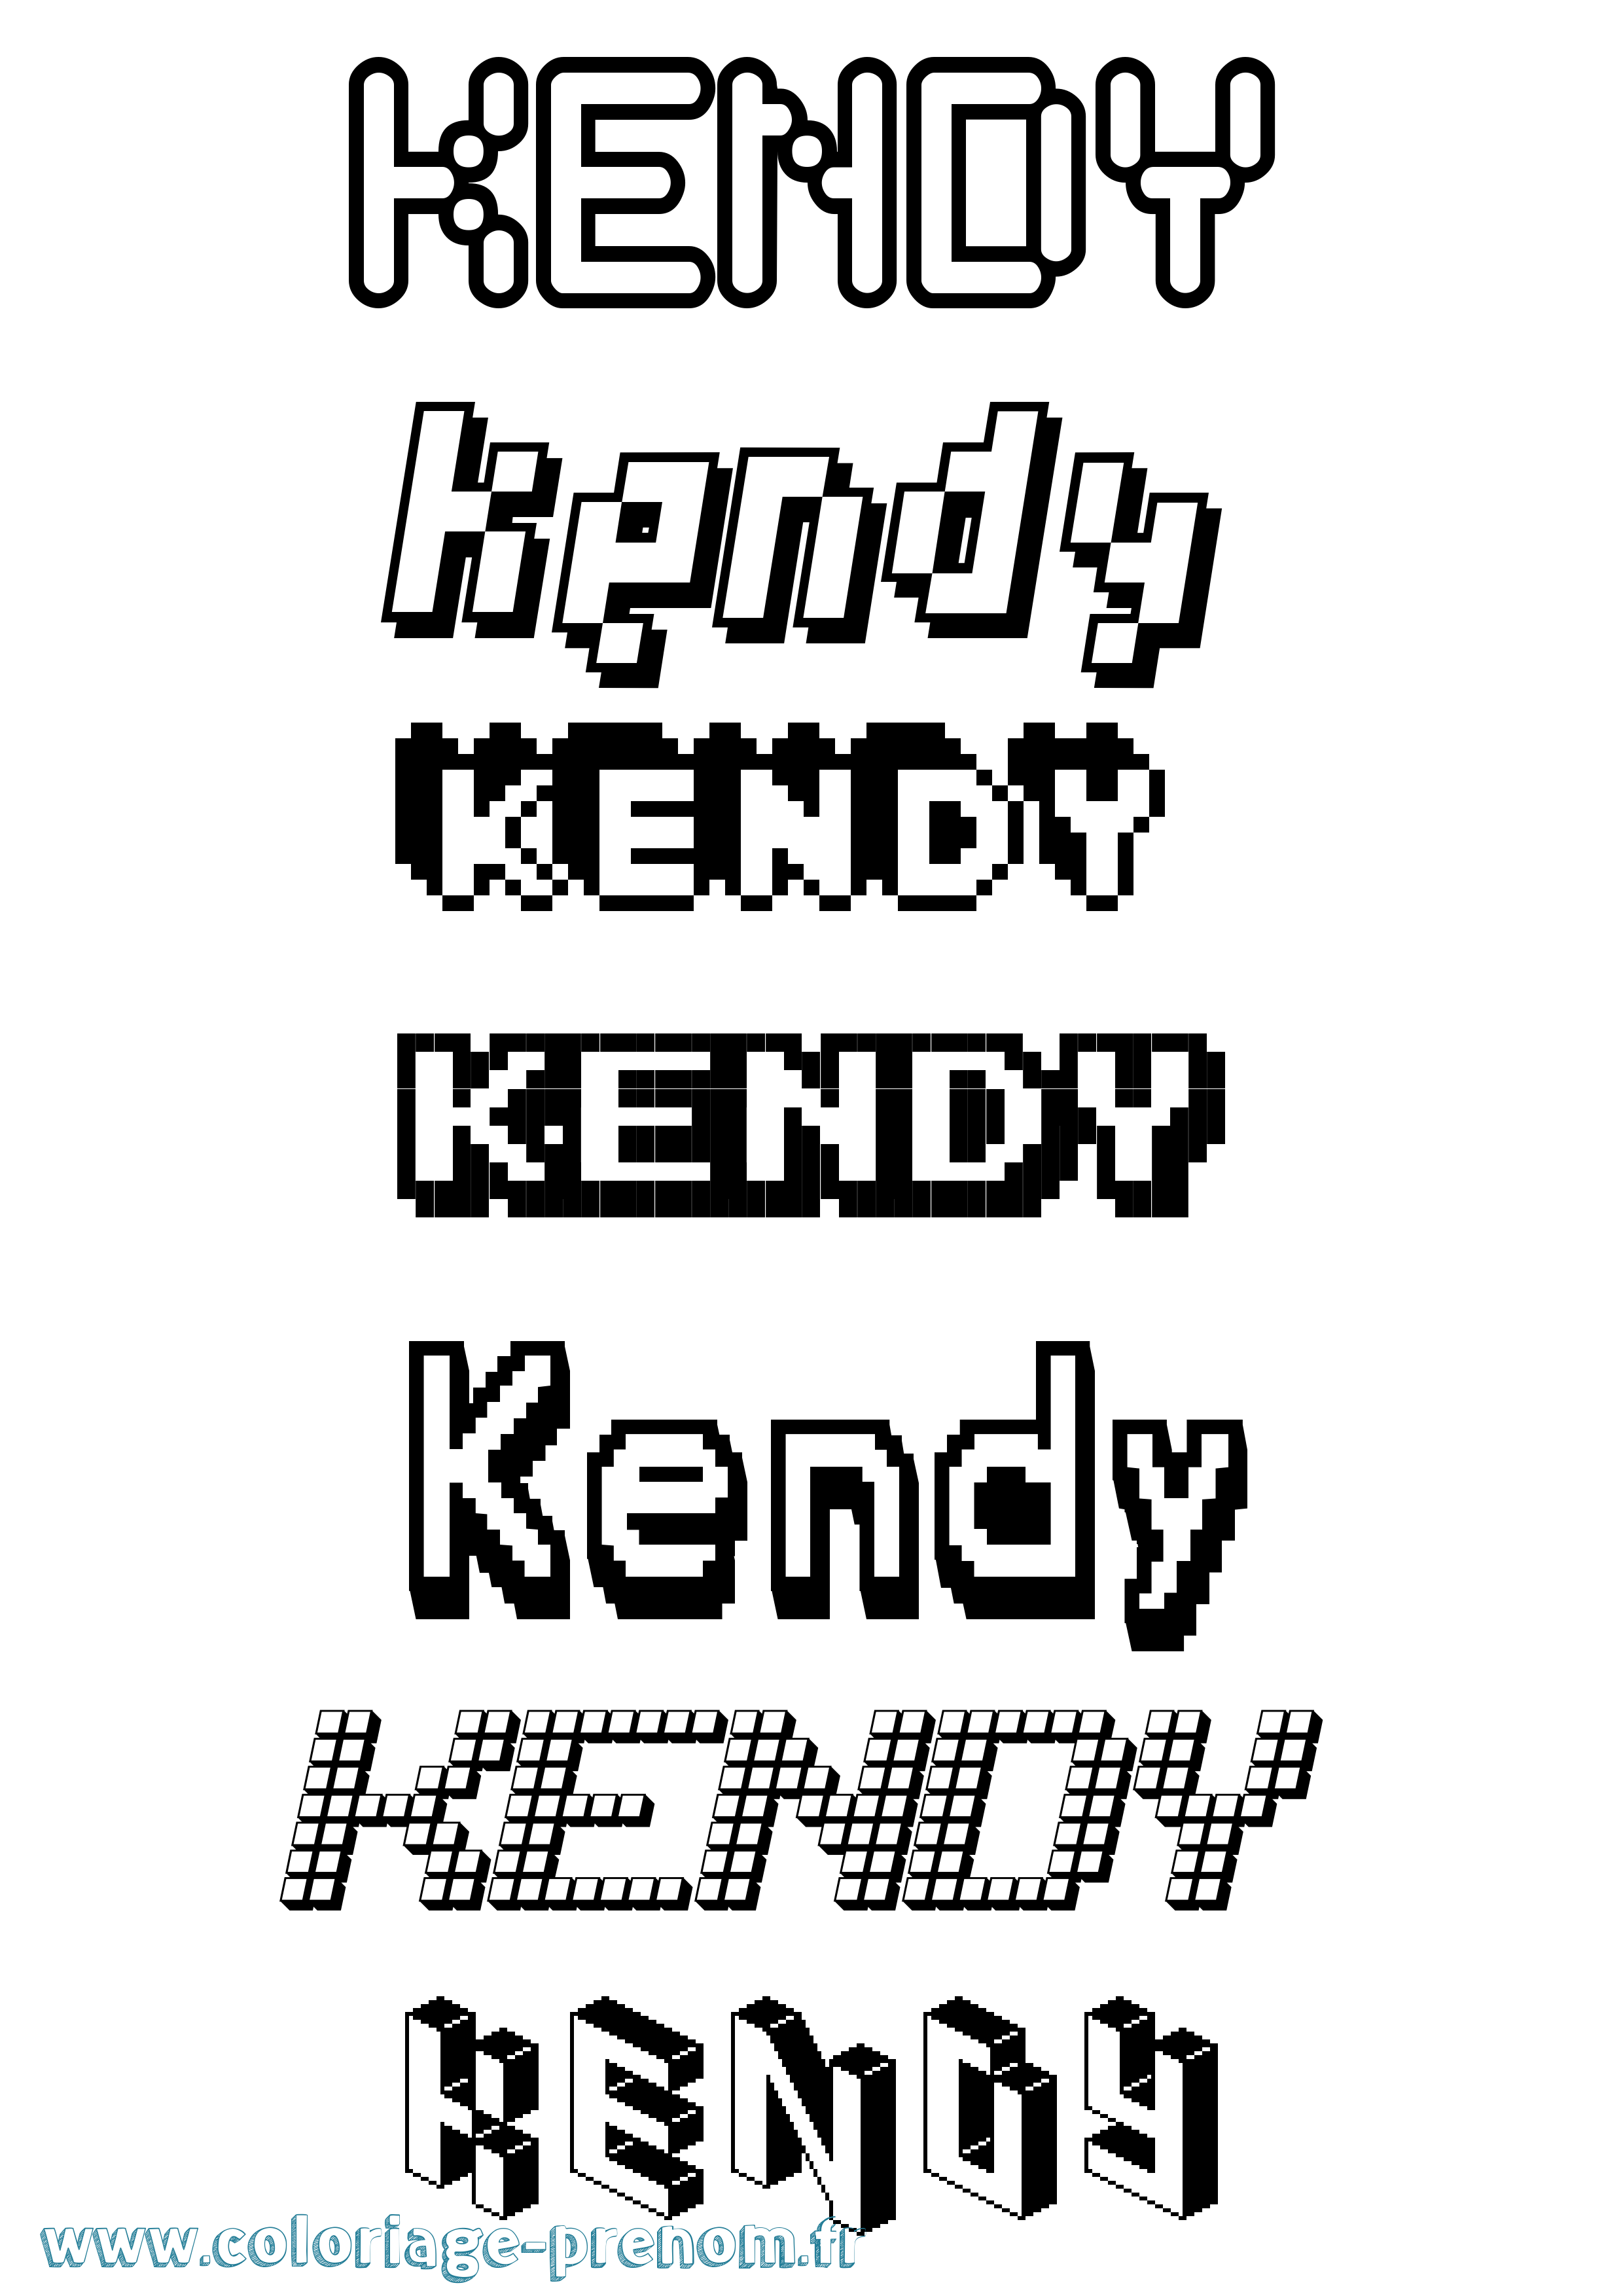 Coloriage prénom Kendy Pixel